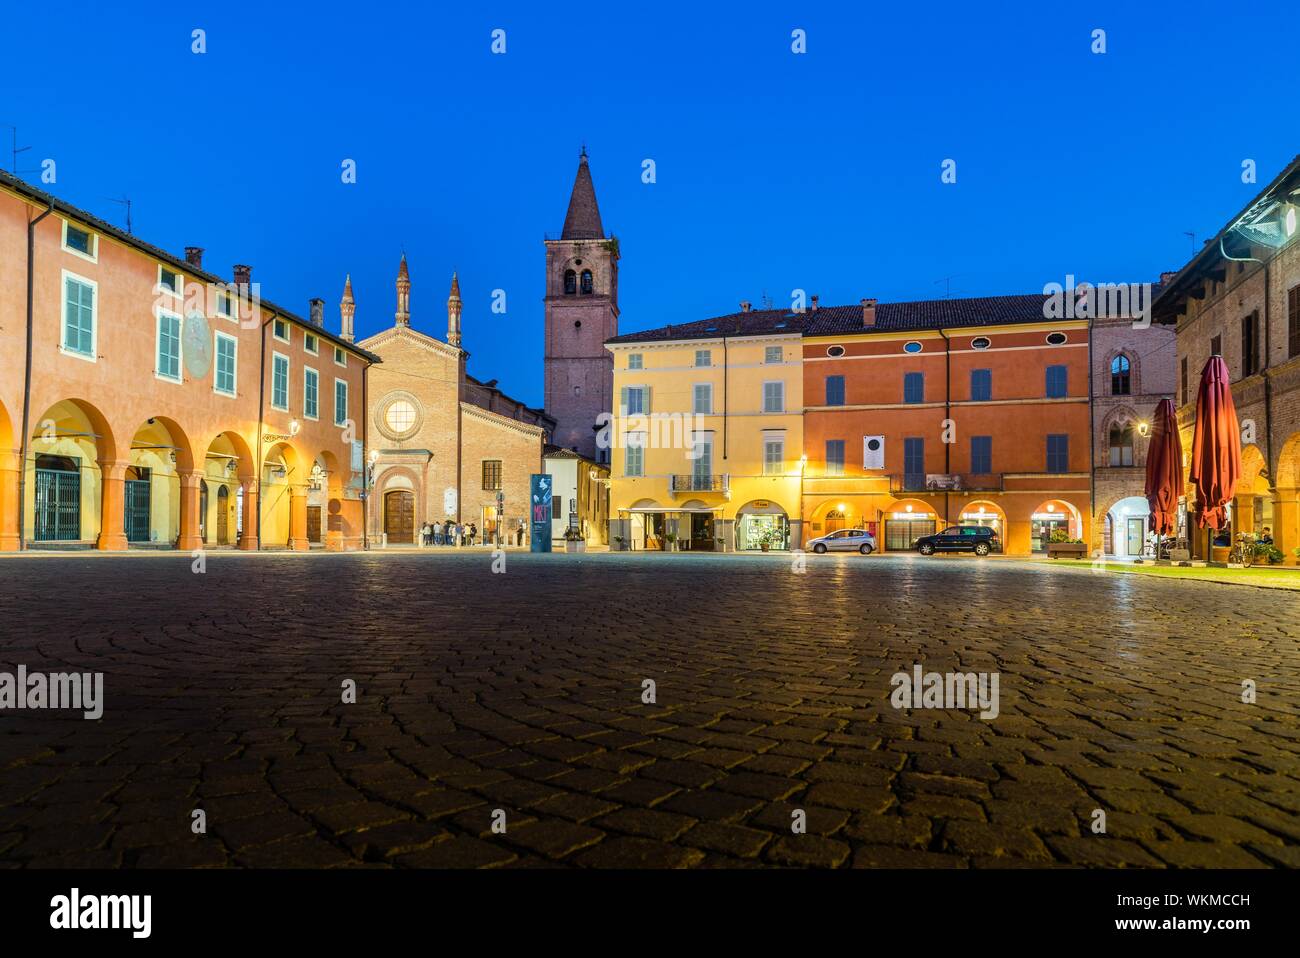 Piazza Giuseppe Verdi avec l'Eglise de San Bartolomeo et la Casa Barezzi, Busseto, Province de Parme, Emilie-Romagne, Italie Banque D'Images